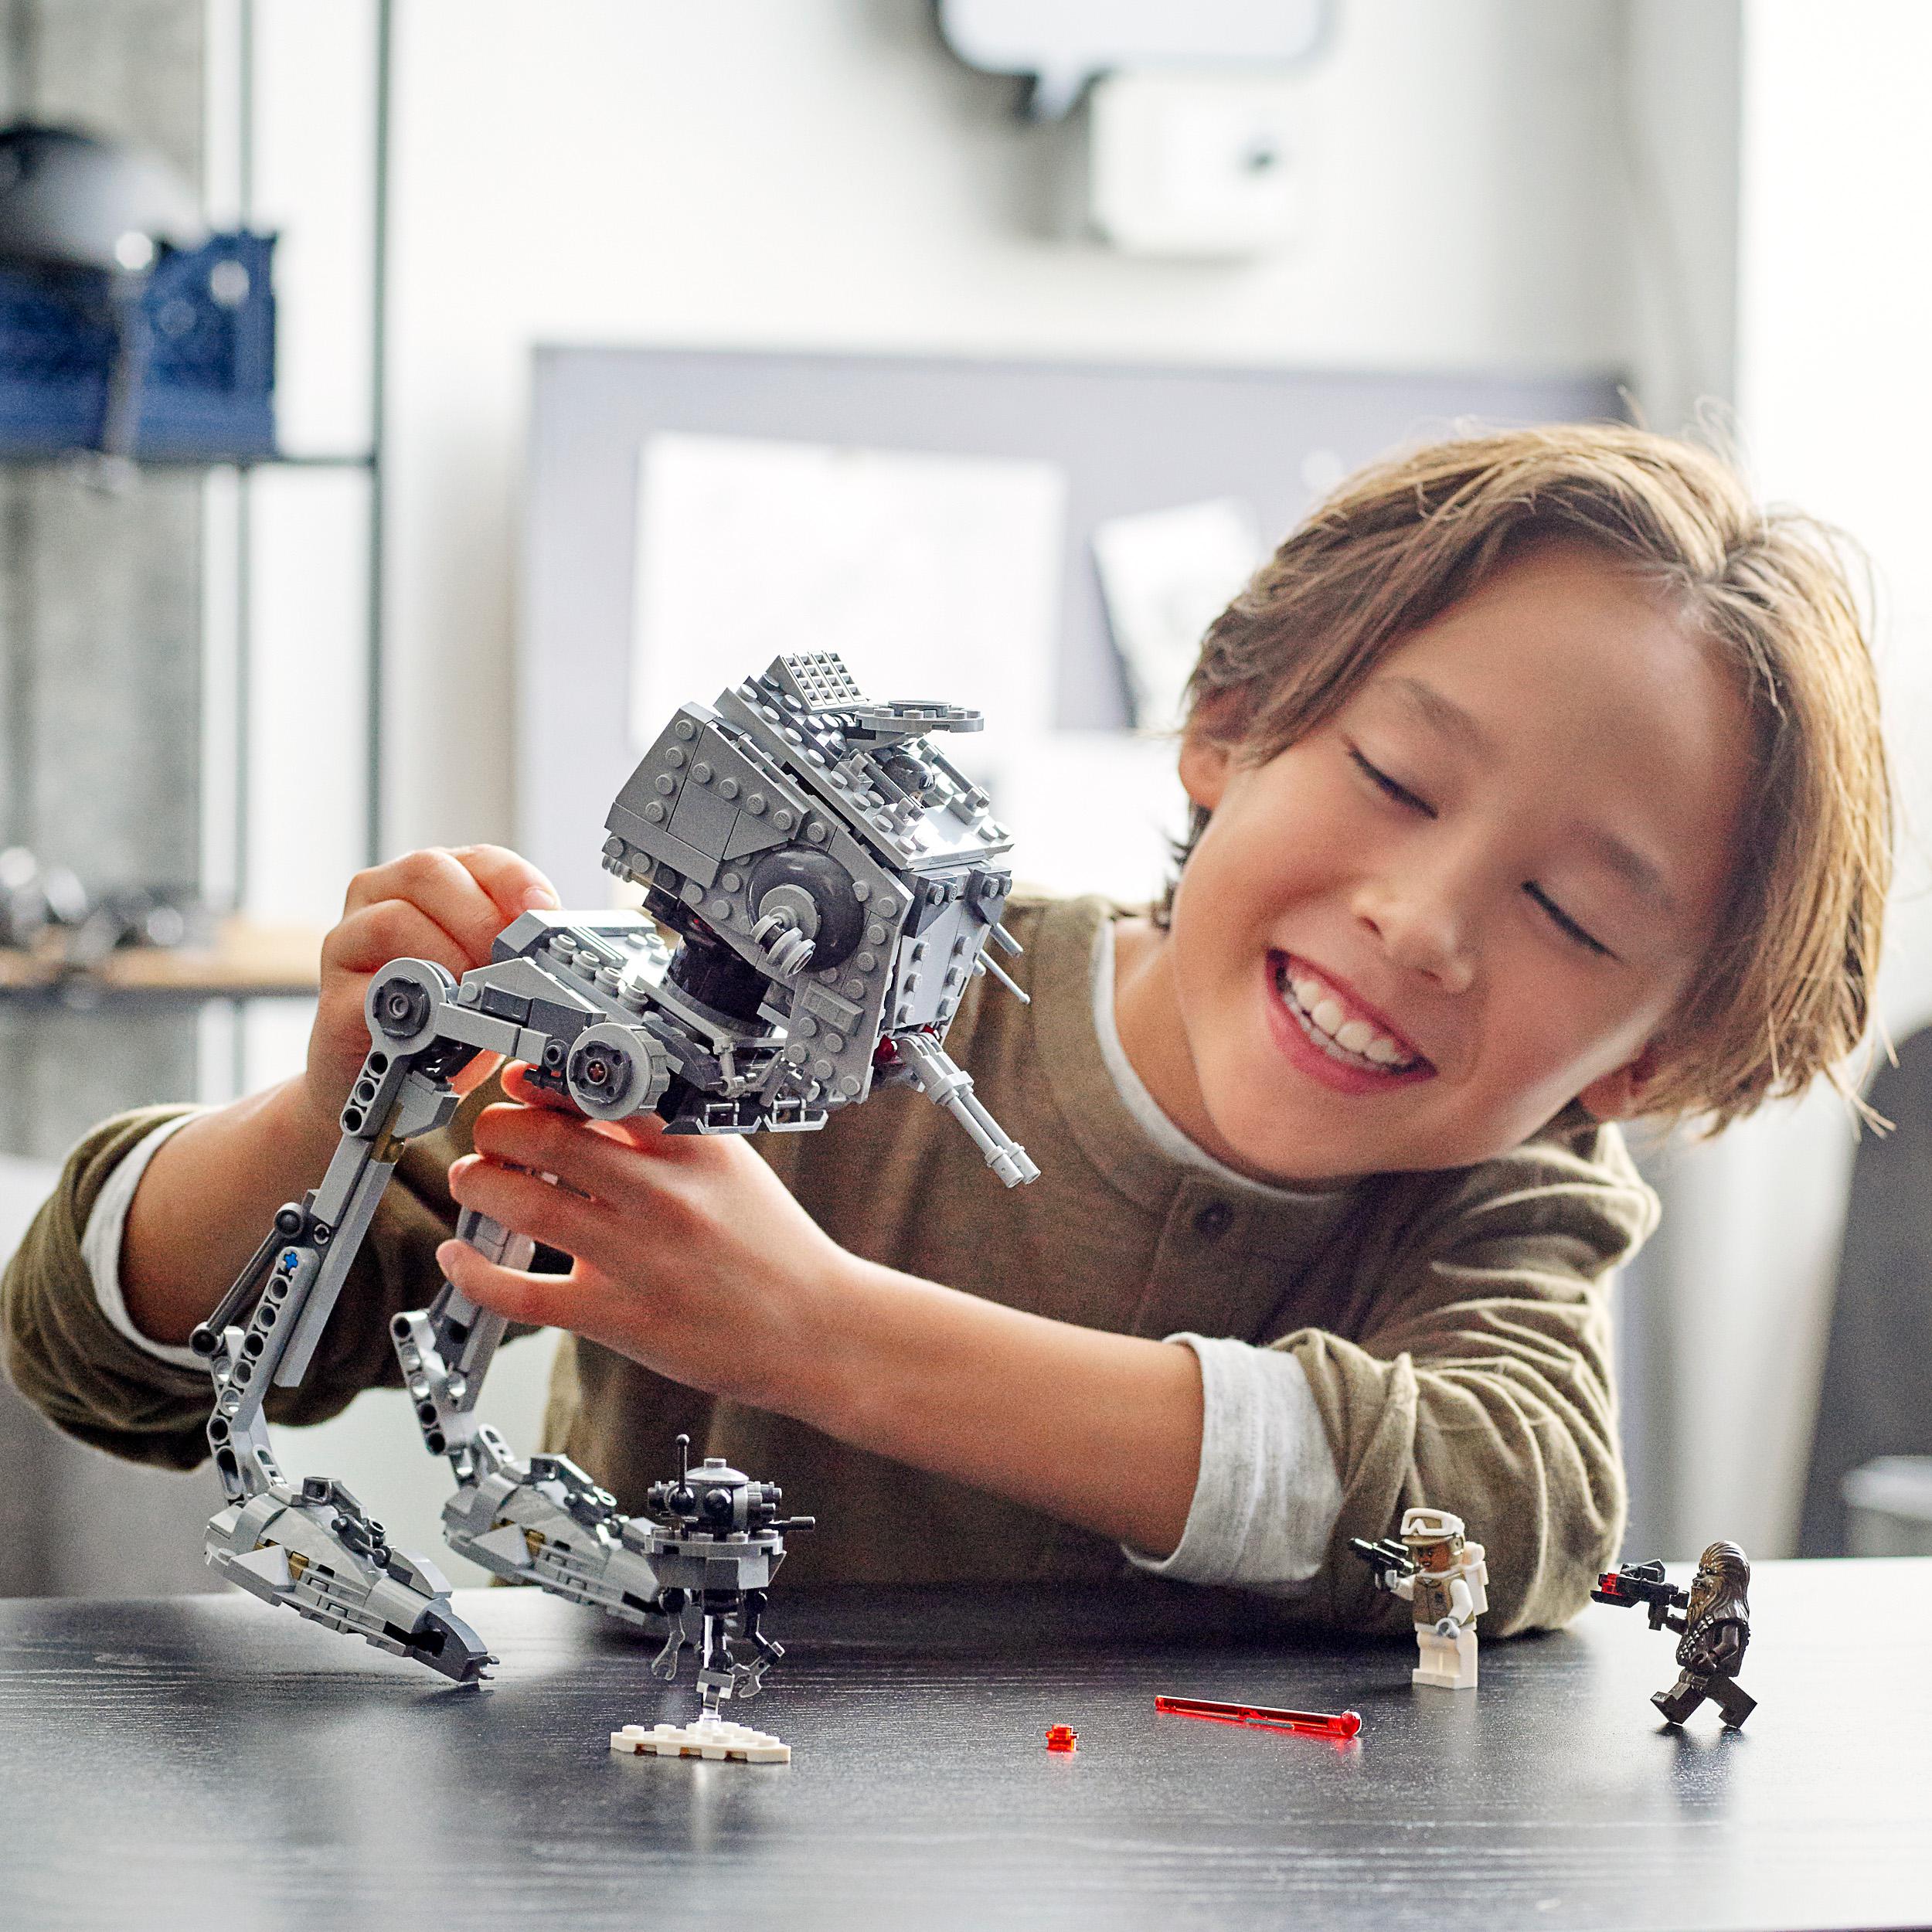 LEGO Star Wars AT-ST di Hoth con Minifigure di Chewbacca e Droide, Modellino del 75322, , large